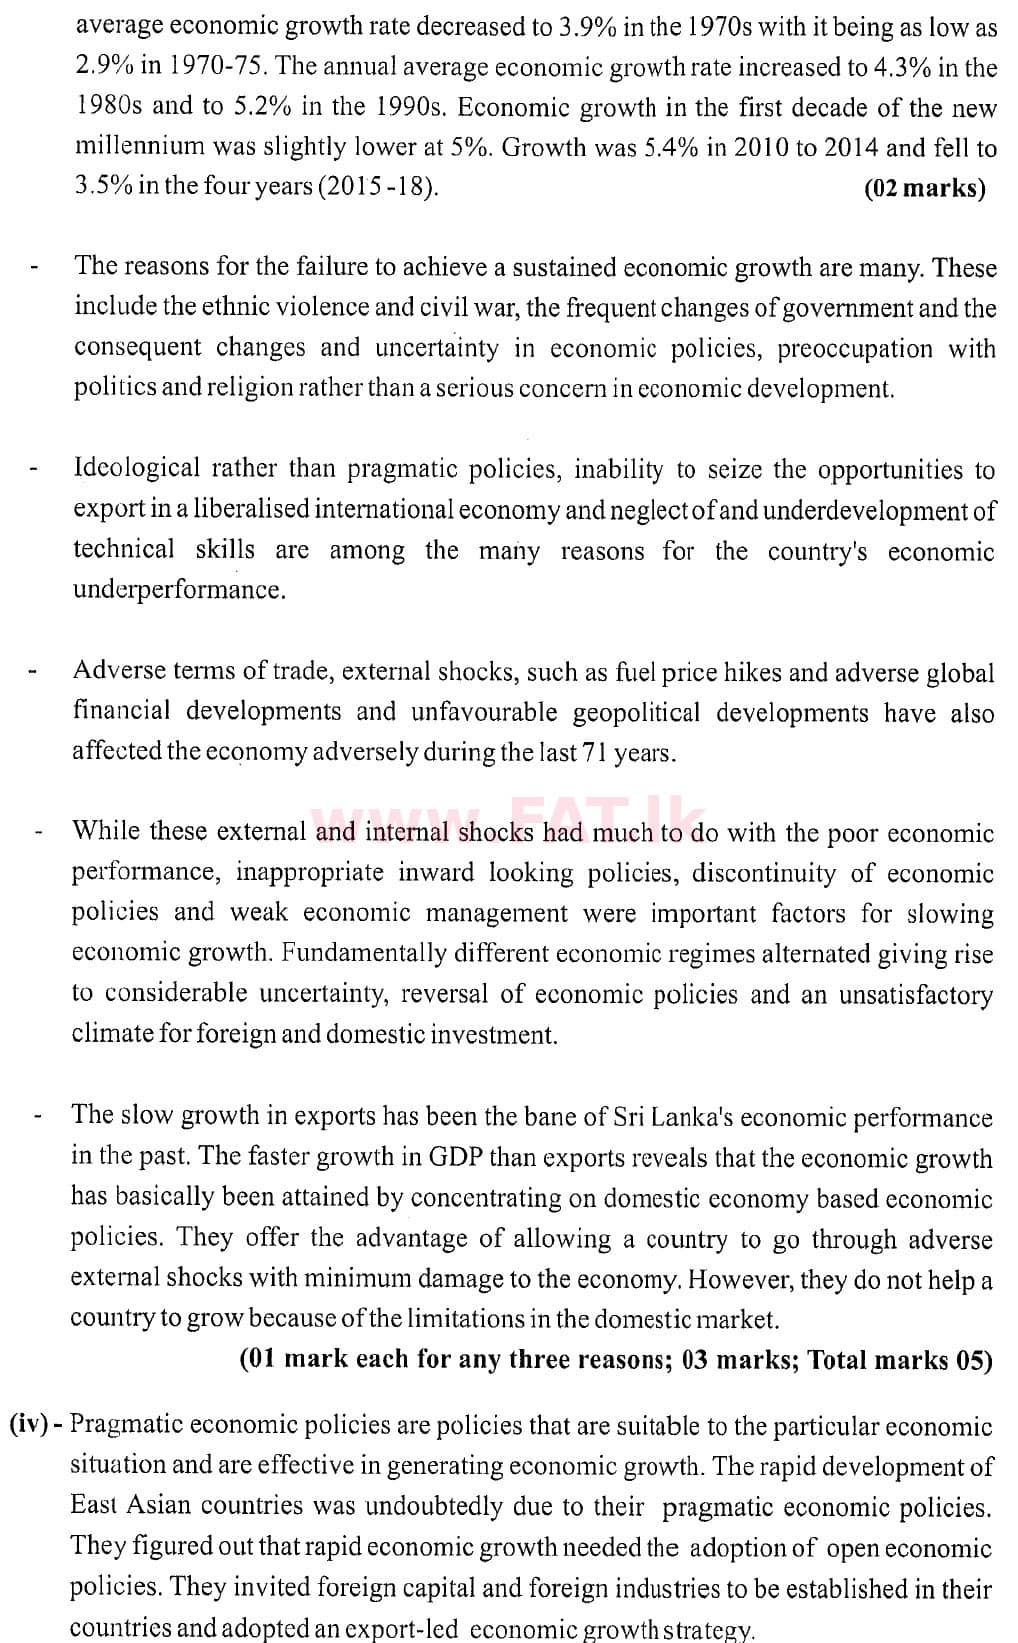 National Syllabus : Advanced Level (A/L) Economics - 2020 October - Paper II (New Syllabus) (English Medium) 10 6096